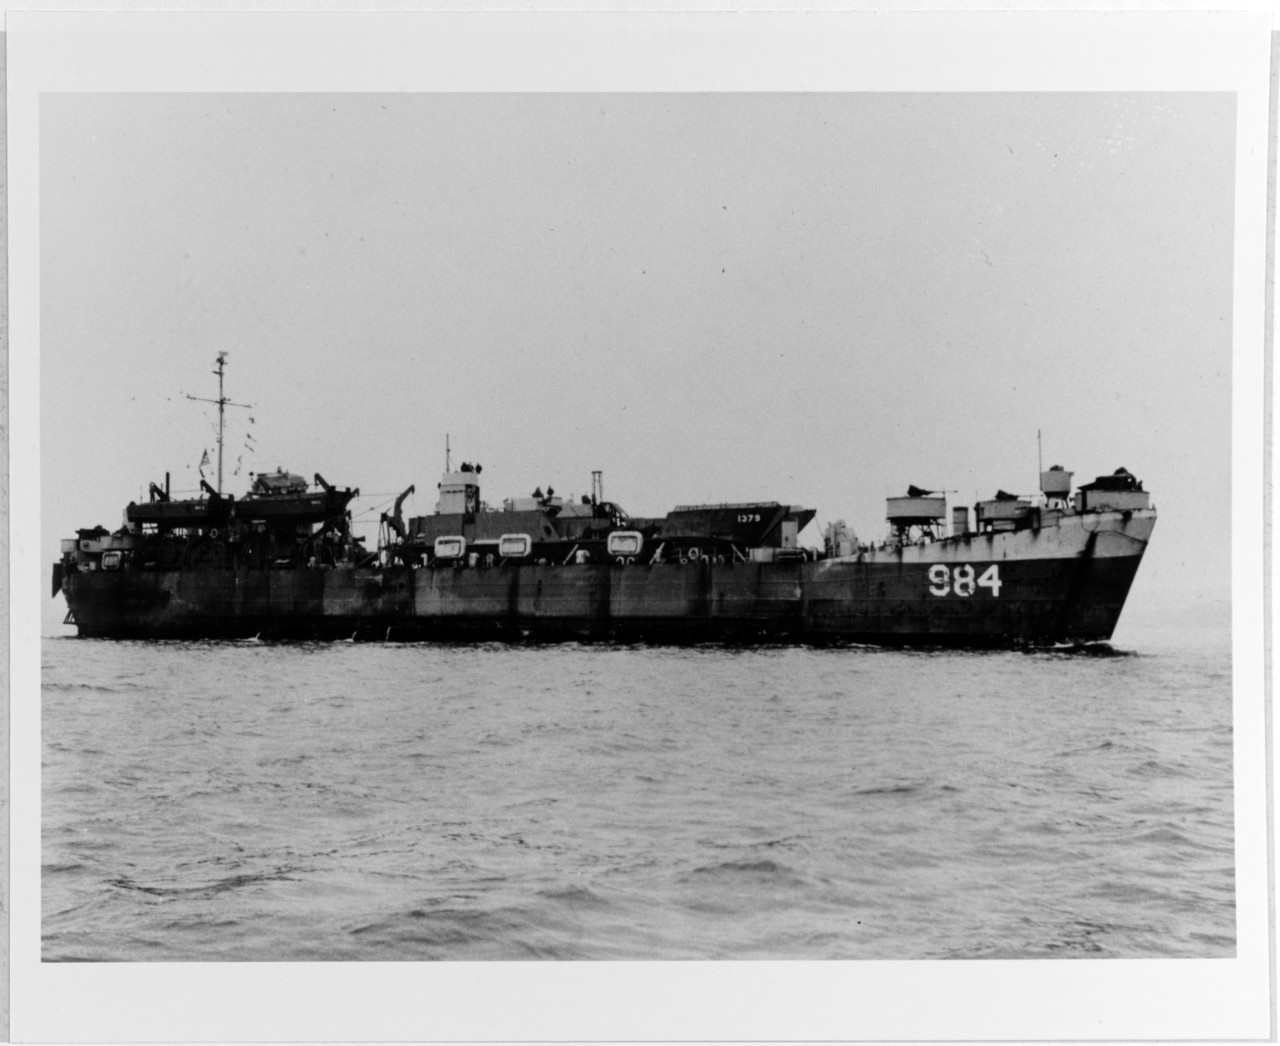 USS LST-984